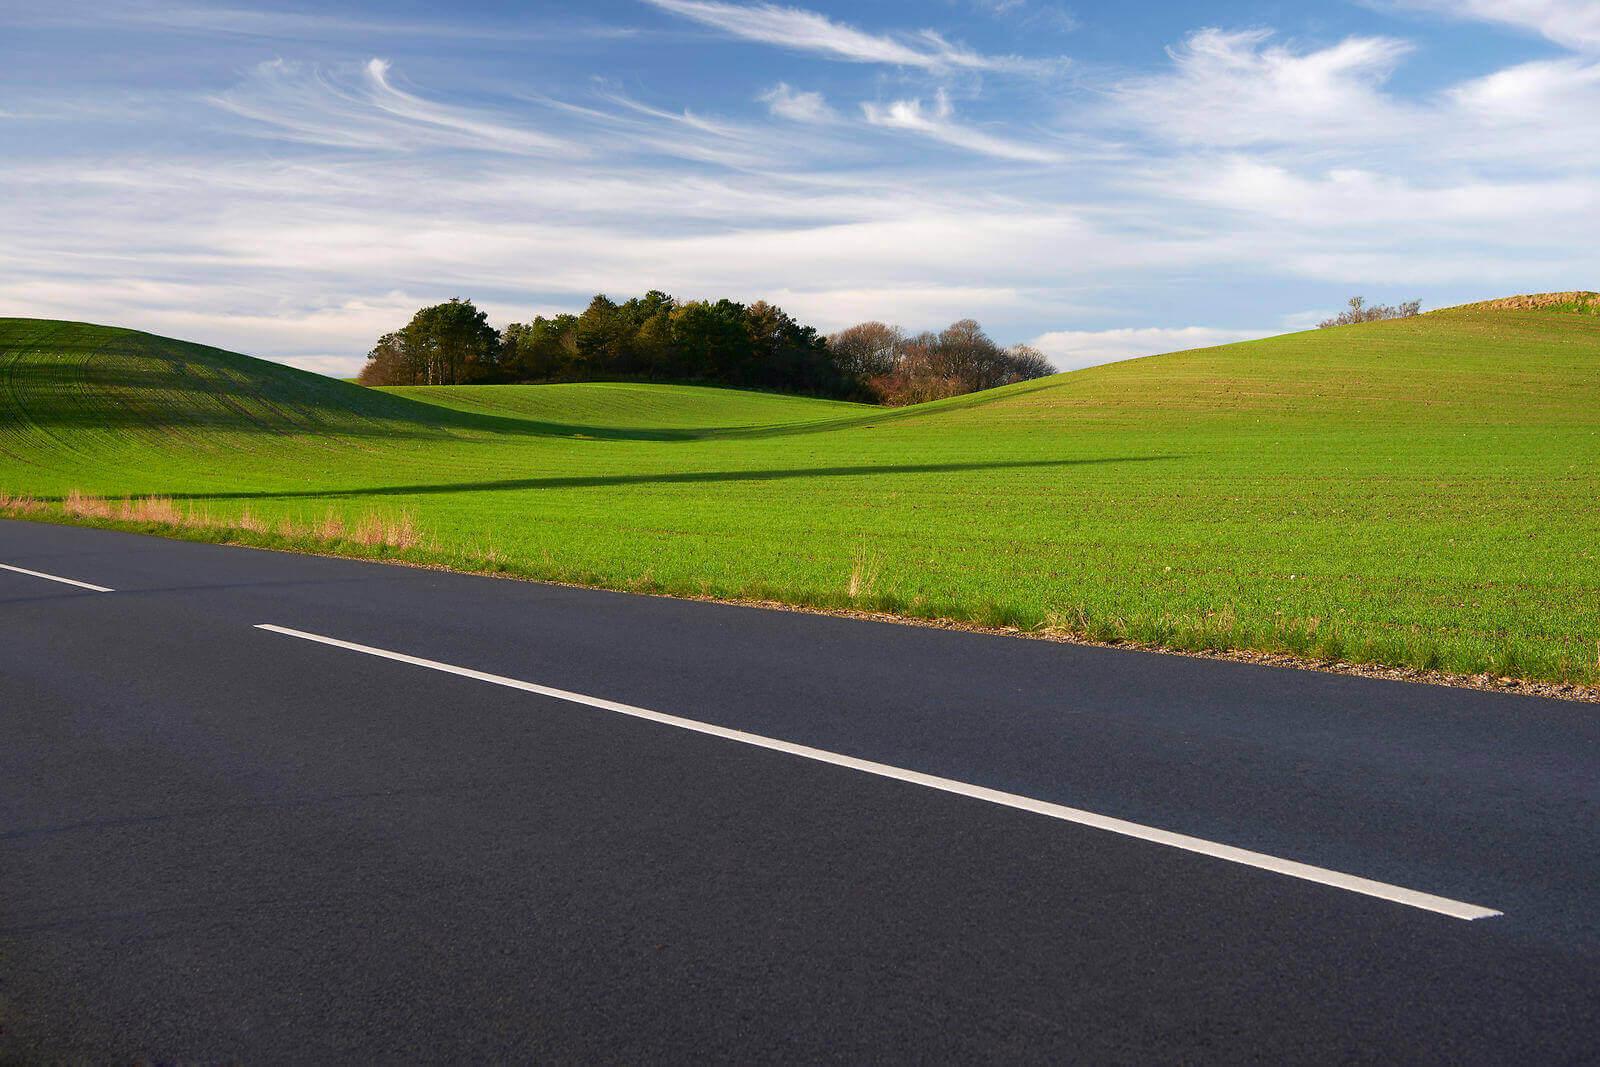 Lavere benzinforbrug, færre forurenende processer og færre køer på grund af vejarbejde er nogle af de klimavenlige fordele ved at vælge asfalt med lang holdbarhed, skriver projektchef fra asfaltbranchen.